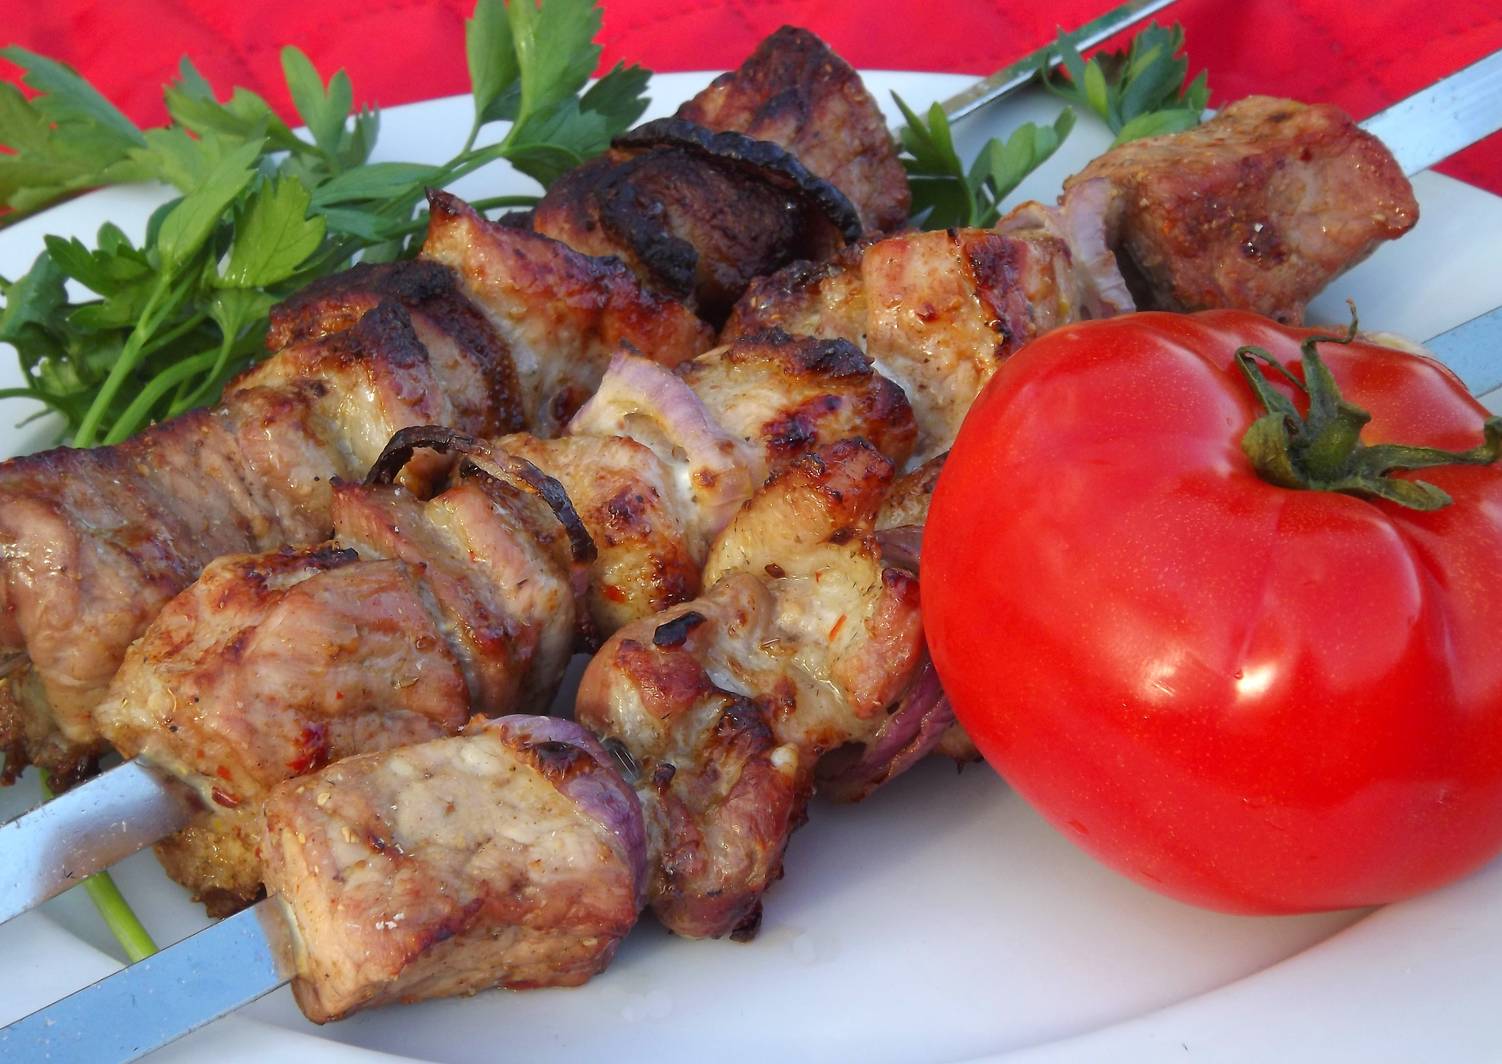 Шашлык из свинины: топ-8 самых вкусных маринадов для шашлыка из свинины, чтобы мясо было мягким и сочным